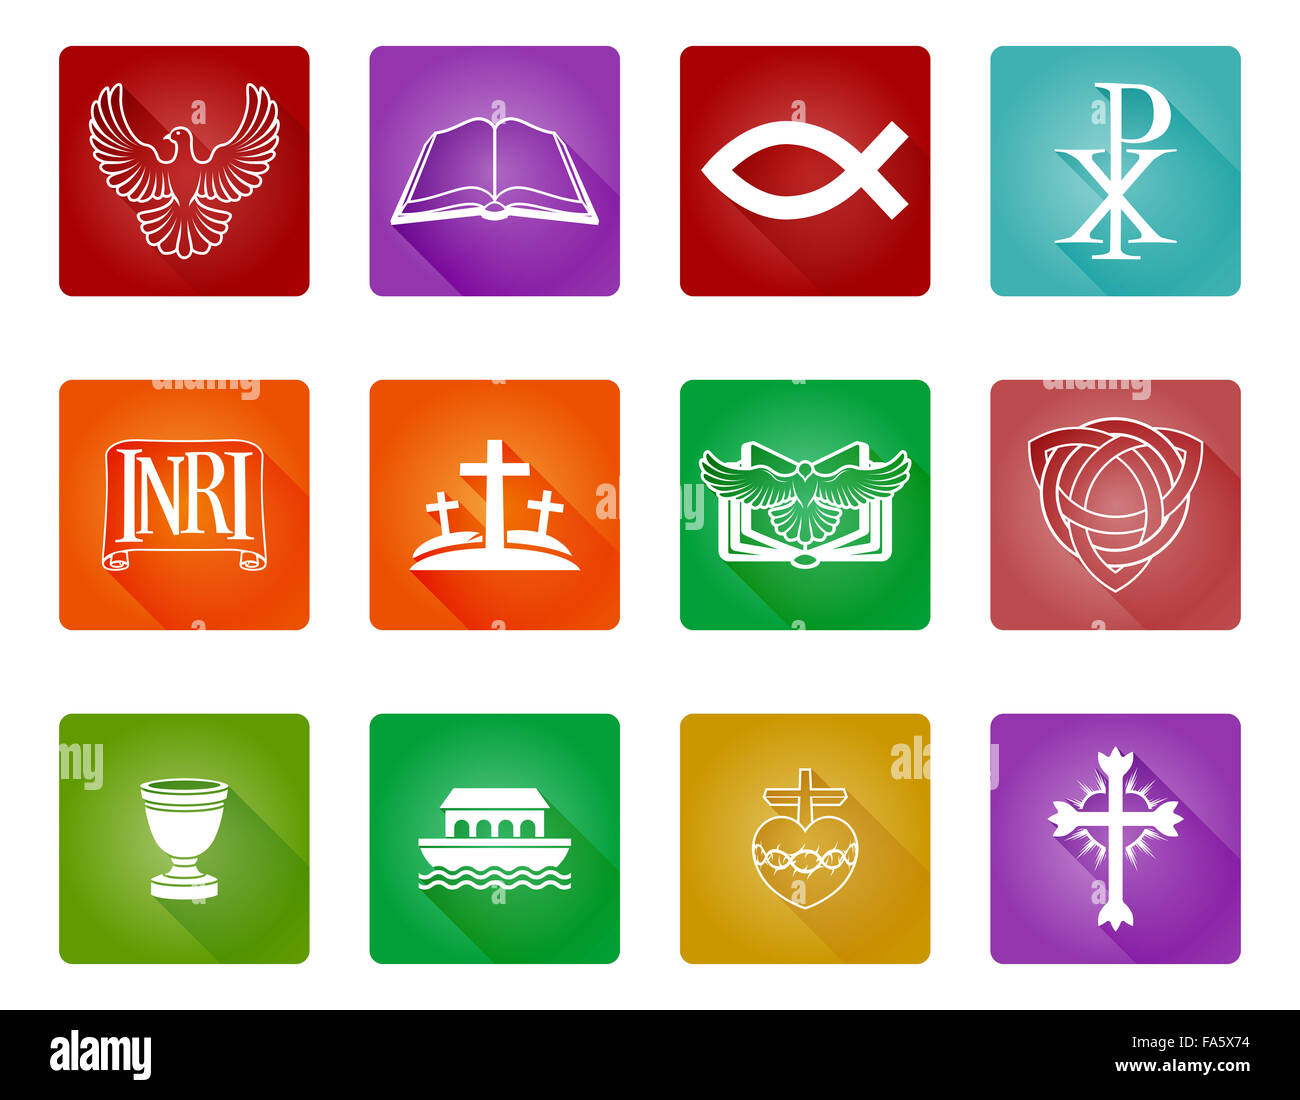 Un conjunto de iconos y símbolos religiosos cristianos Foto de stock